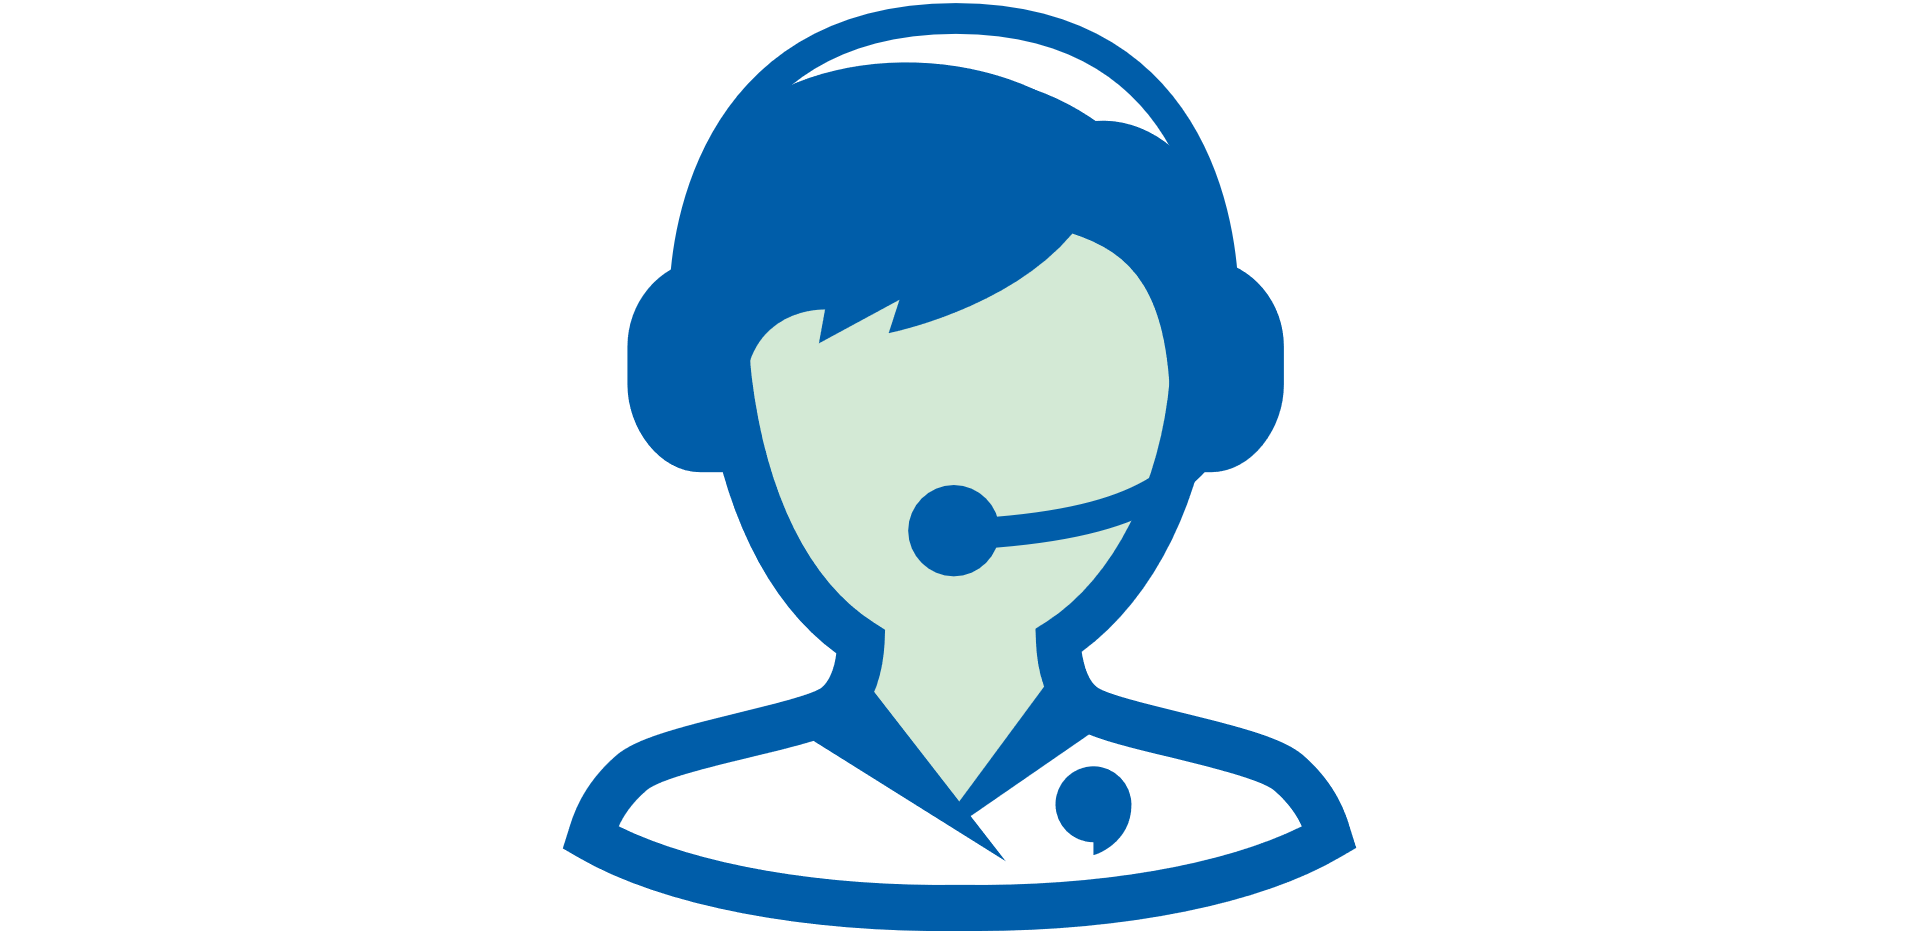 customer care representative icon